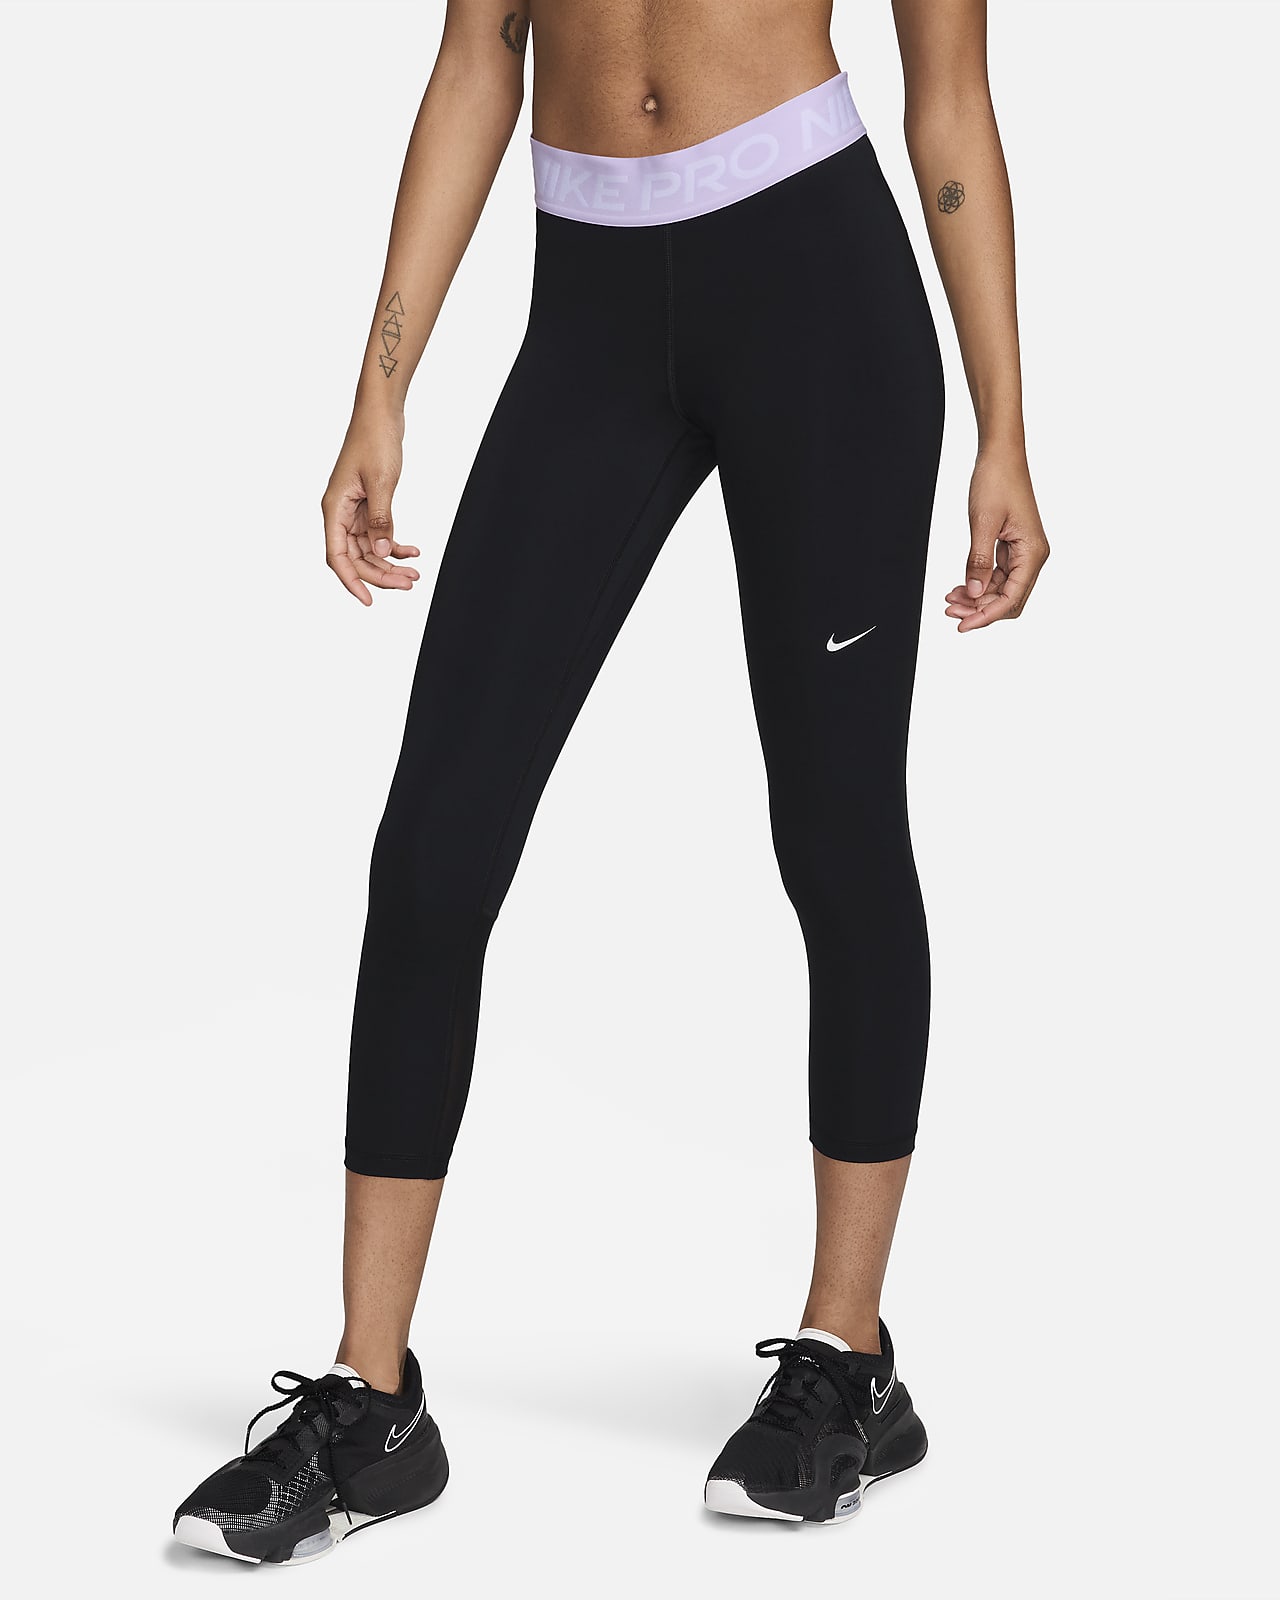 Leggings a vita media e lunghezza ridotta con inserti in mesh Nike Pro – Donna